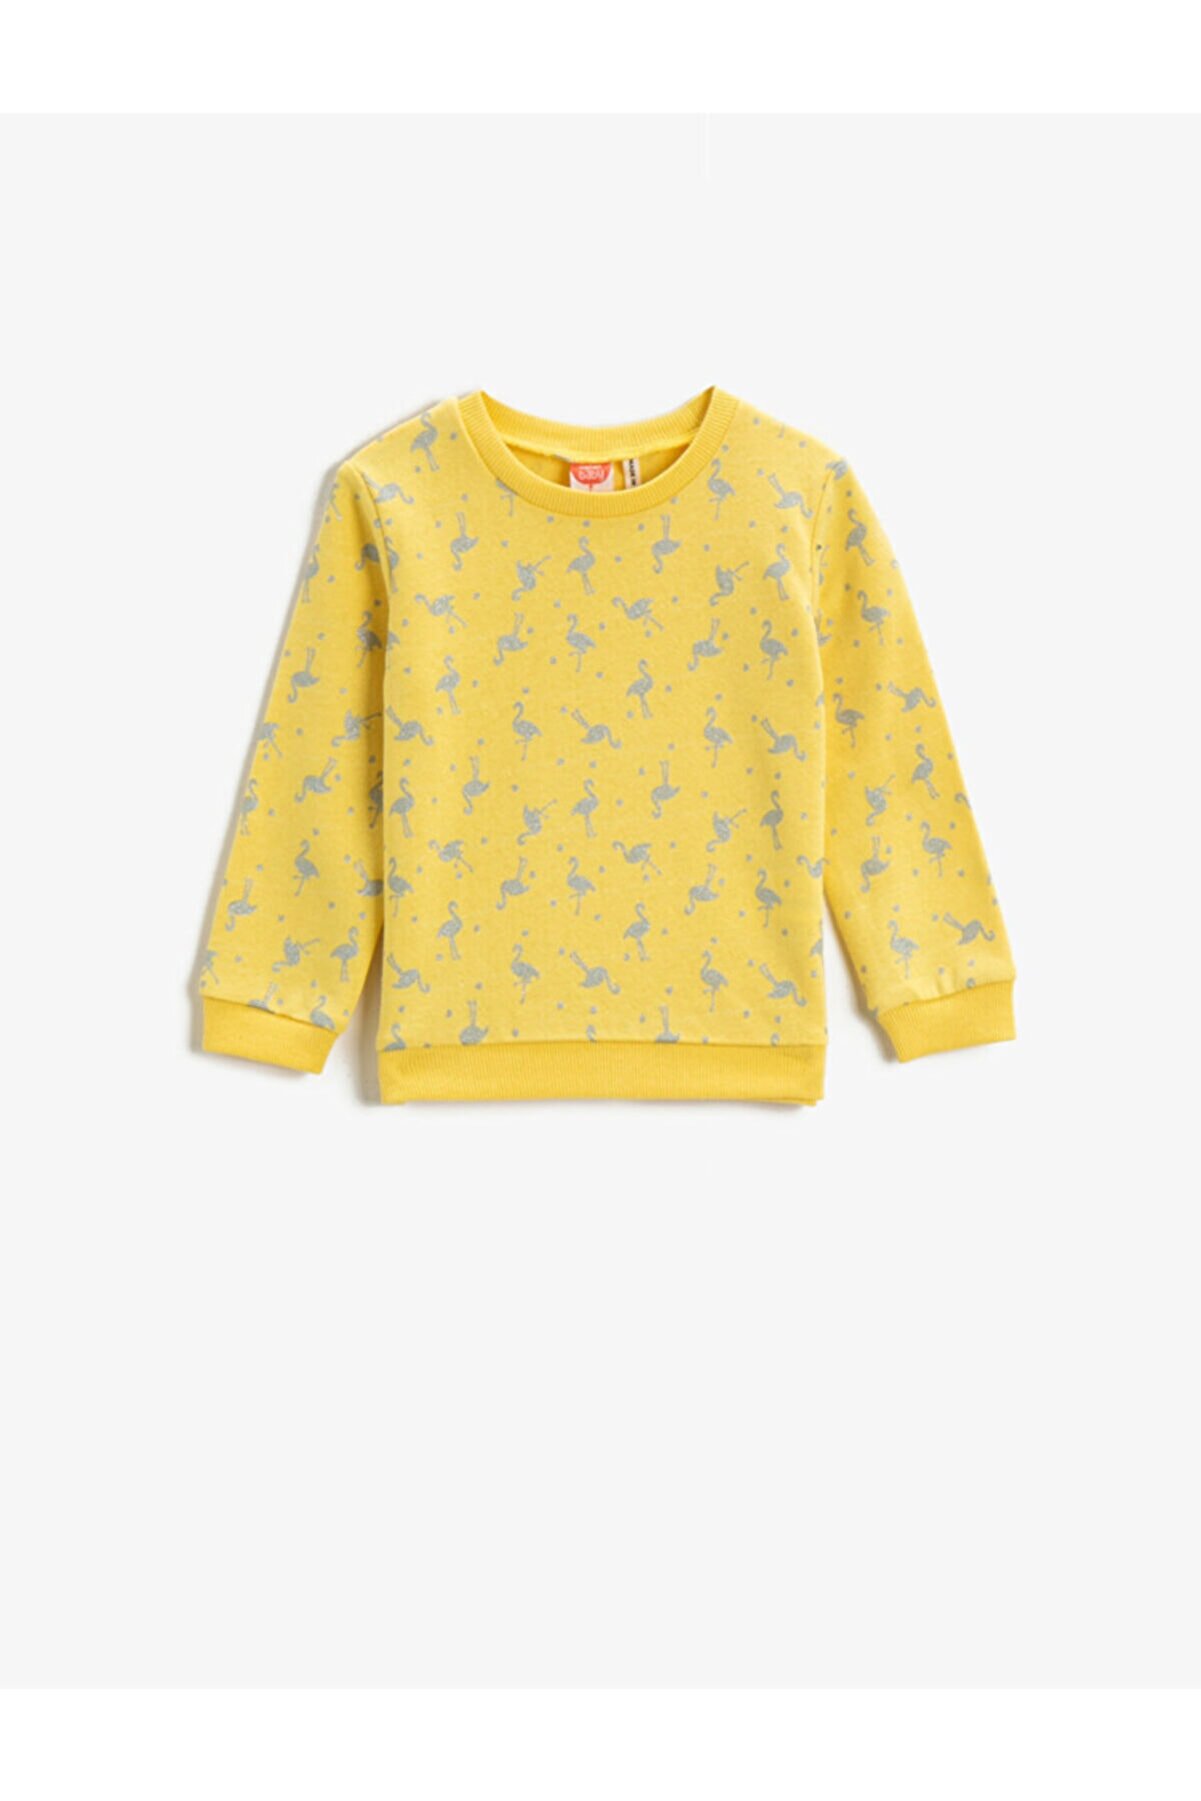 Koton Kız Bebek Çok Renkli Sweatshirt